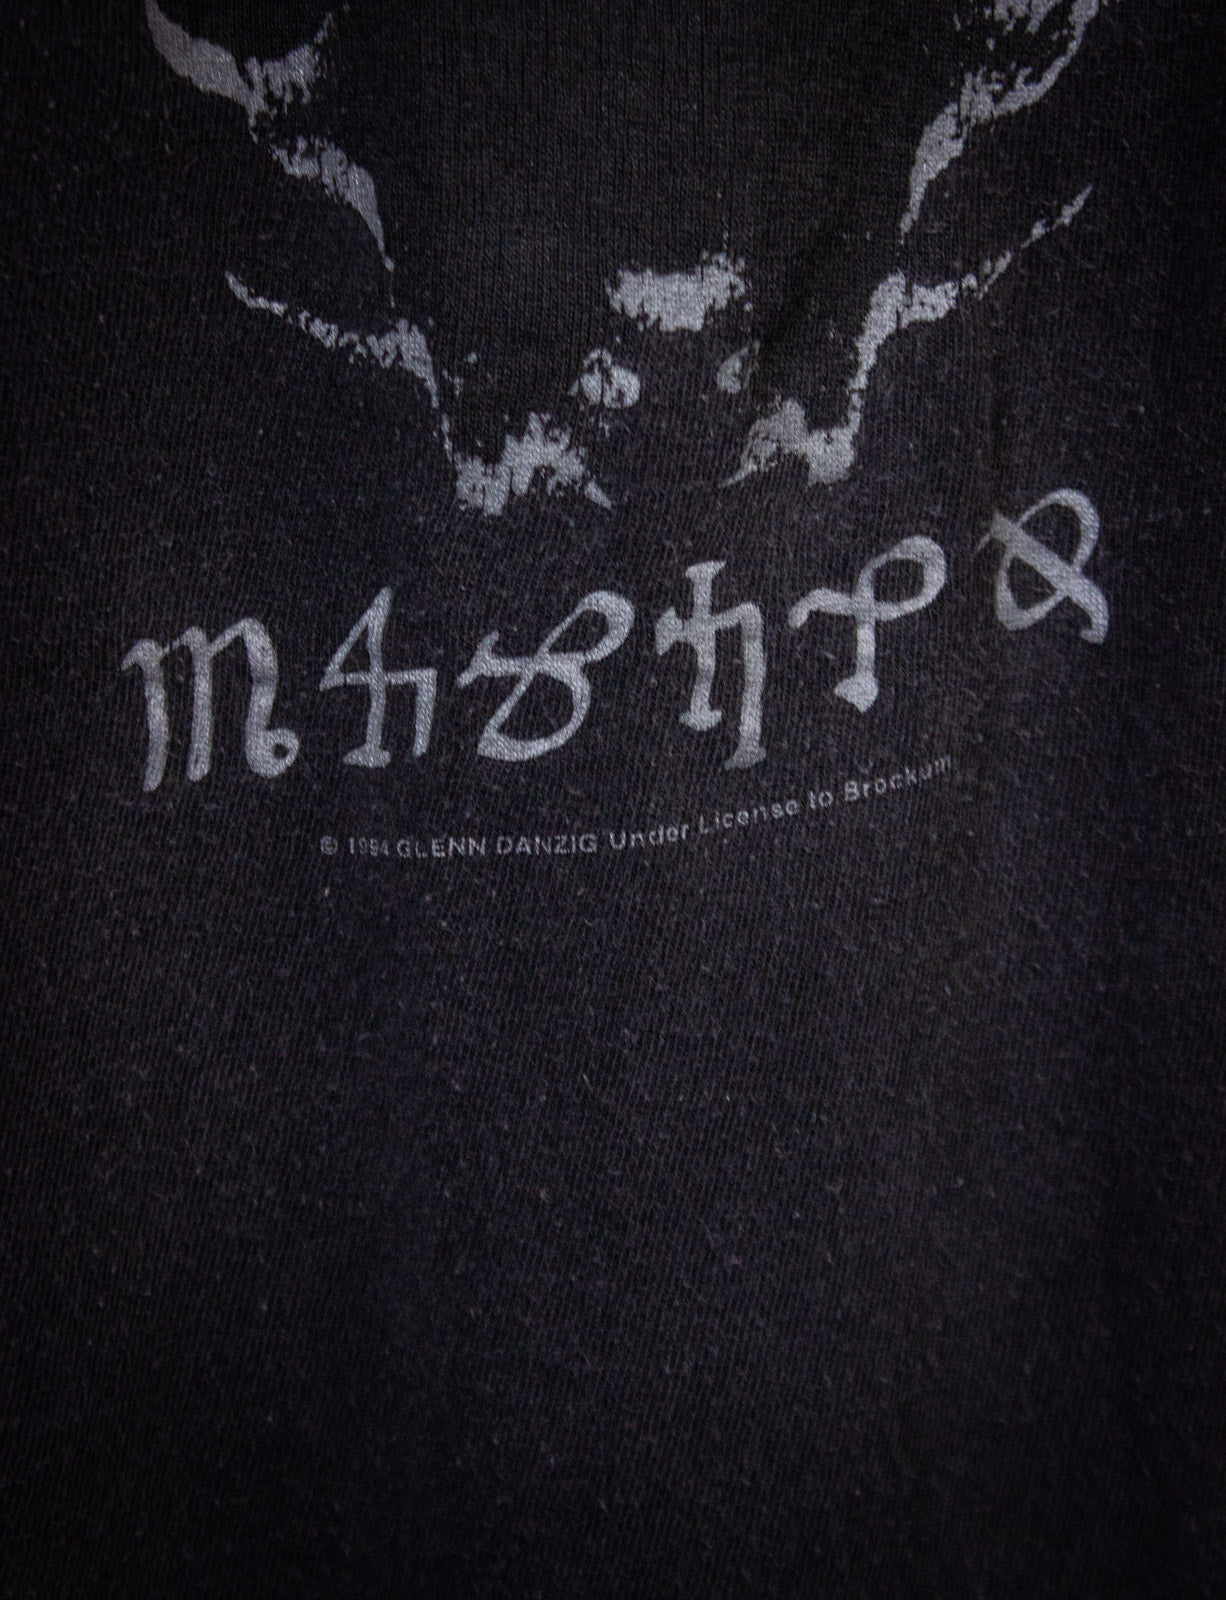 Vintage Danzig 4 Tour Concert T Shirt 1994 Black Large